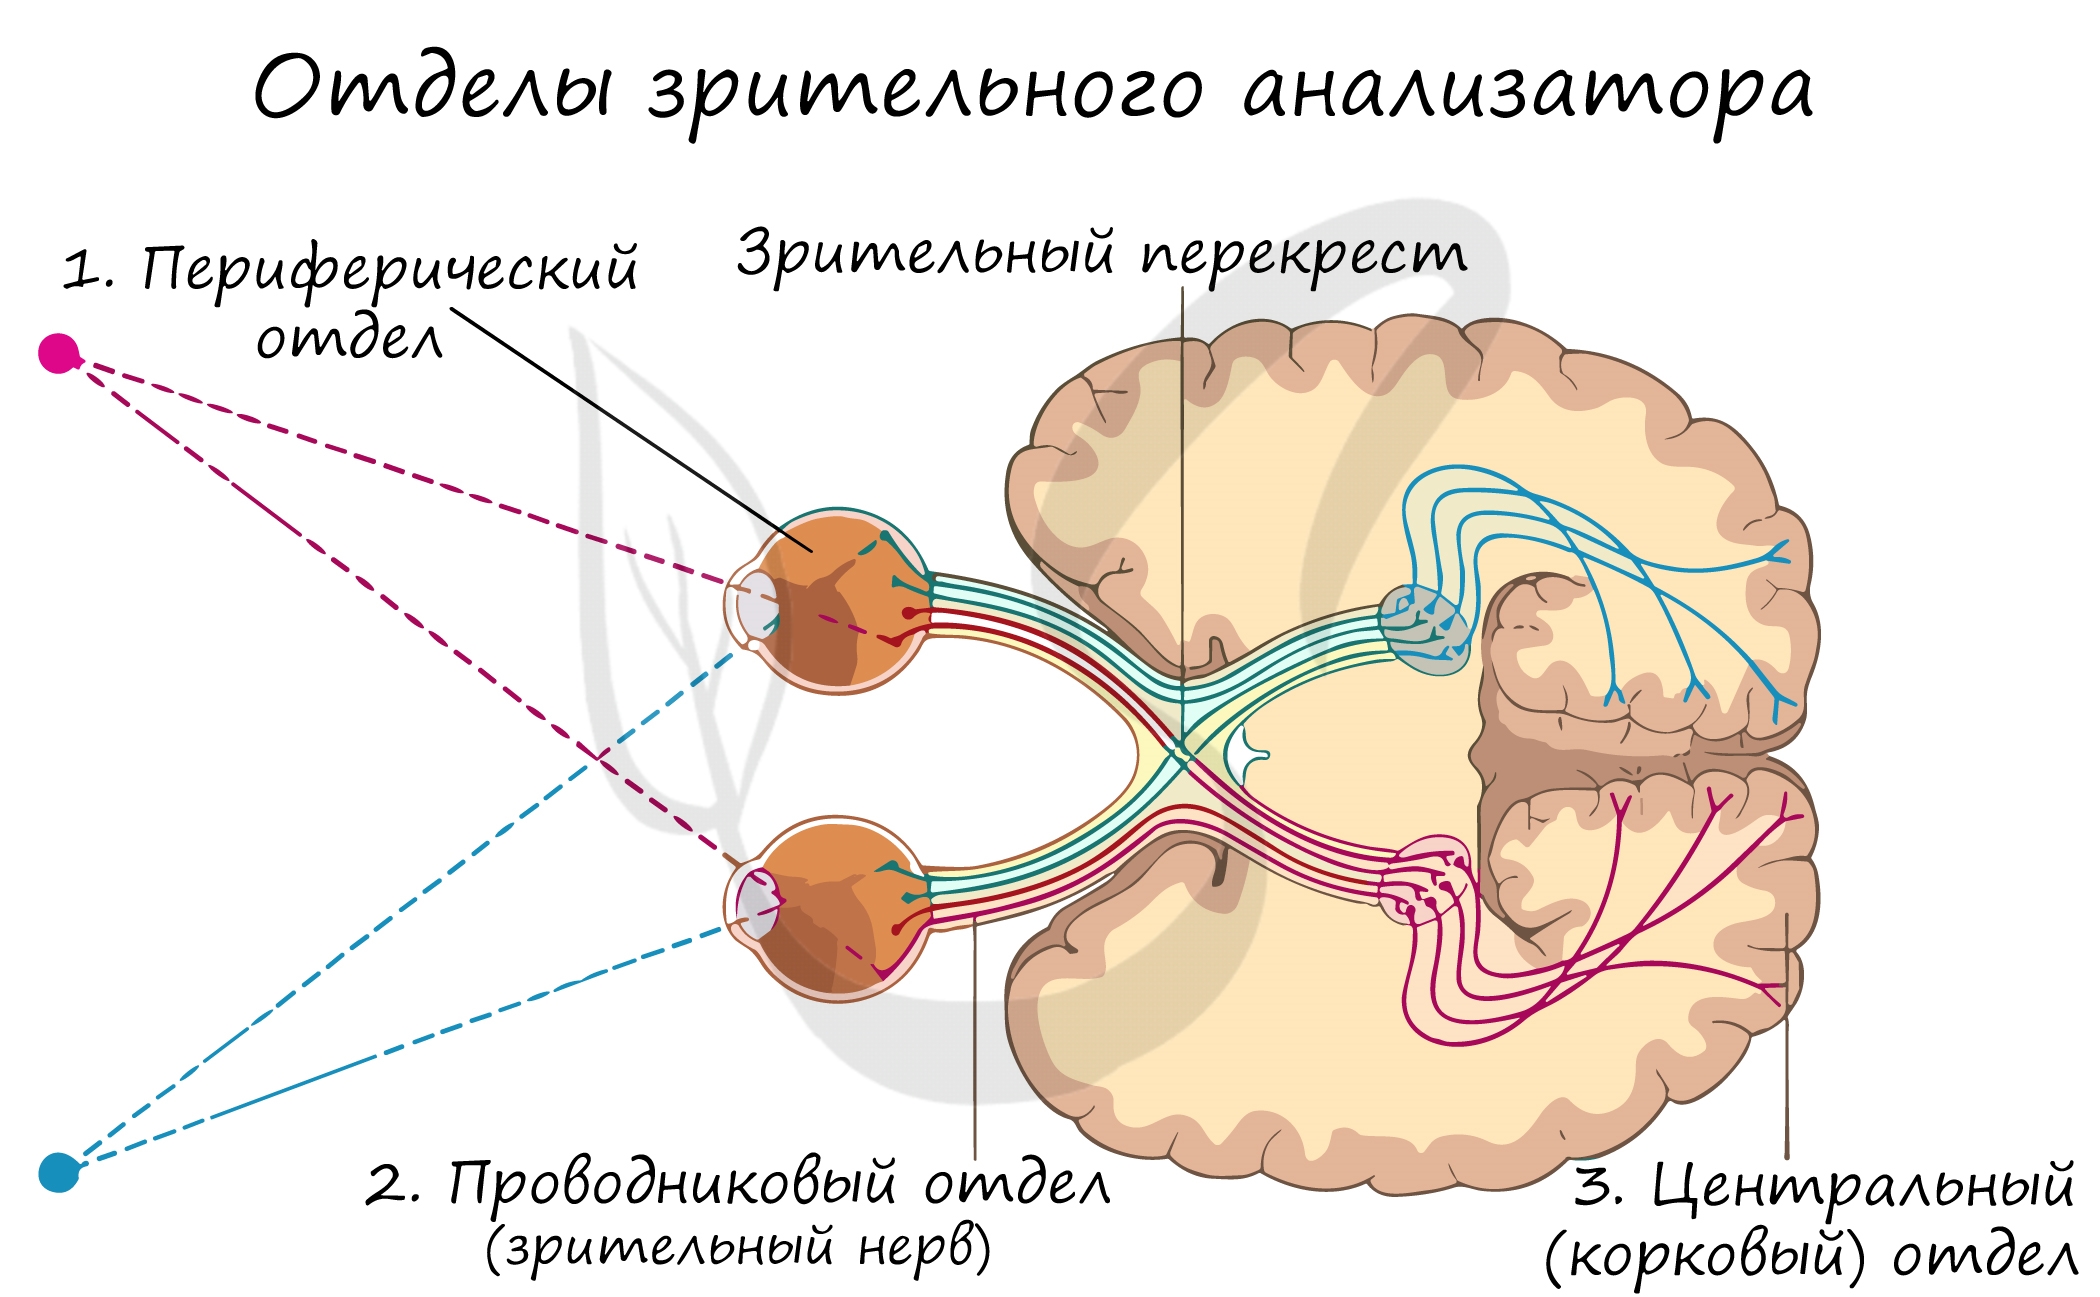 Центральный нервный канал